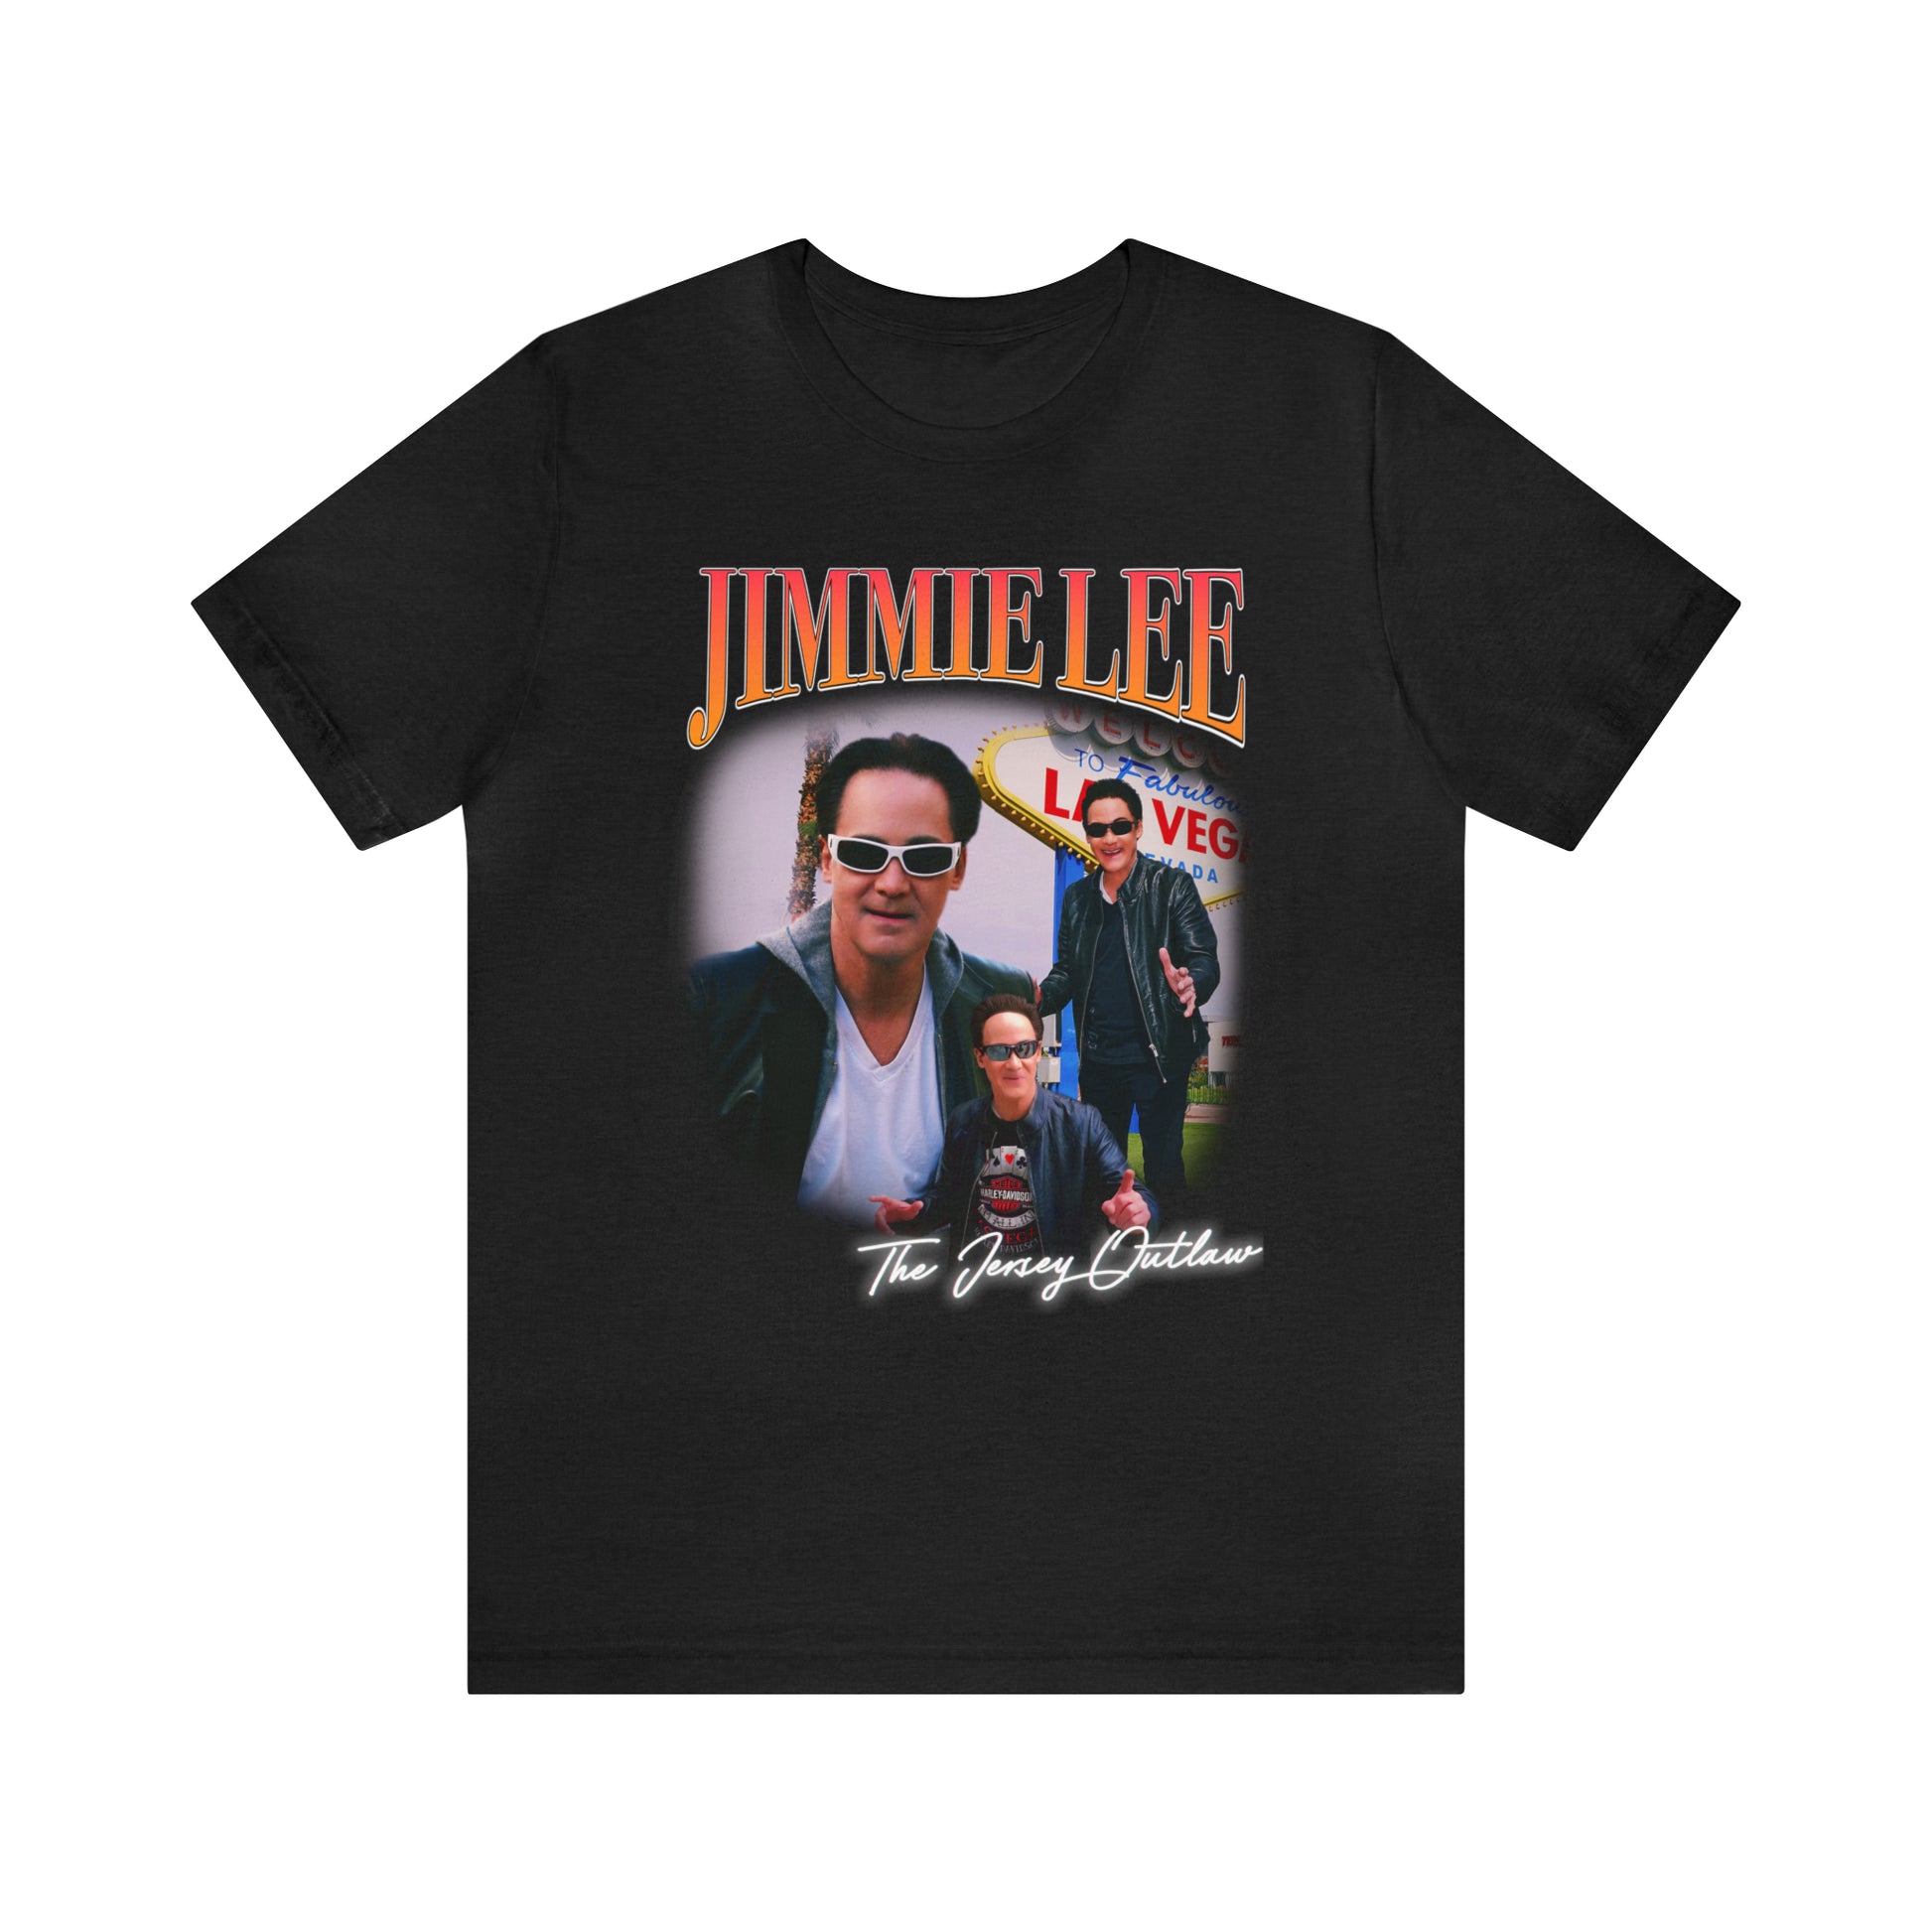 Jimmie Lee The Jersey Outlaw JIMMIEWEAR Shirt – Fan